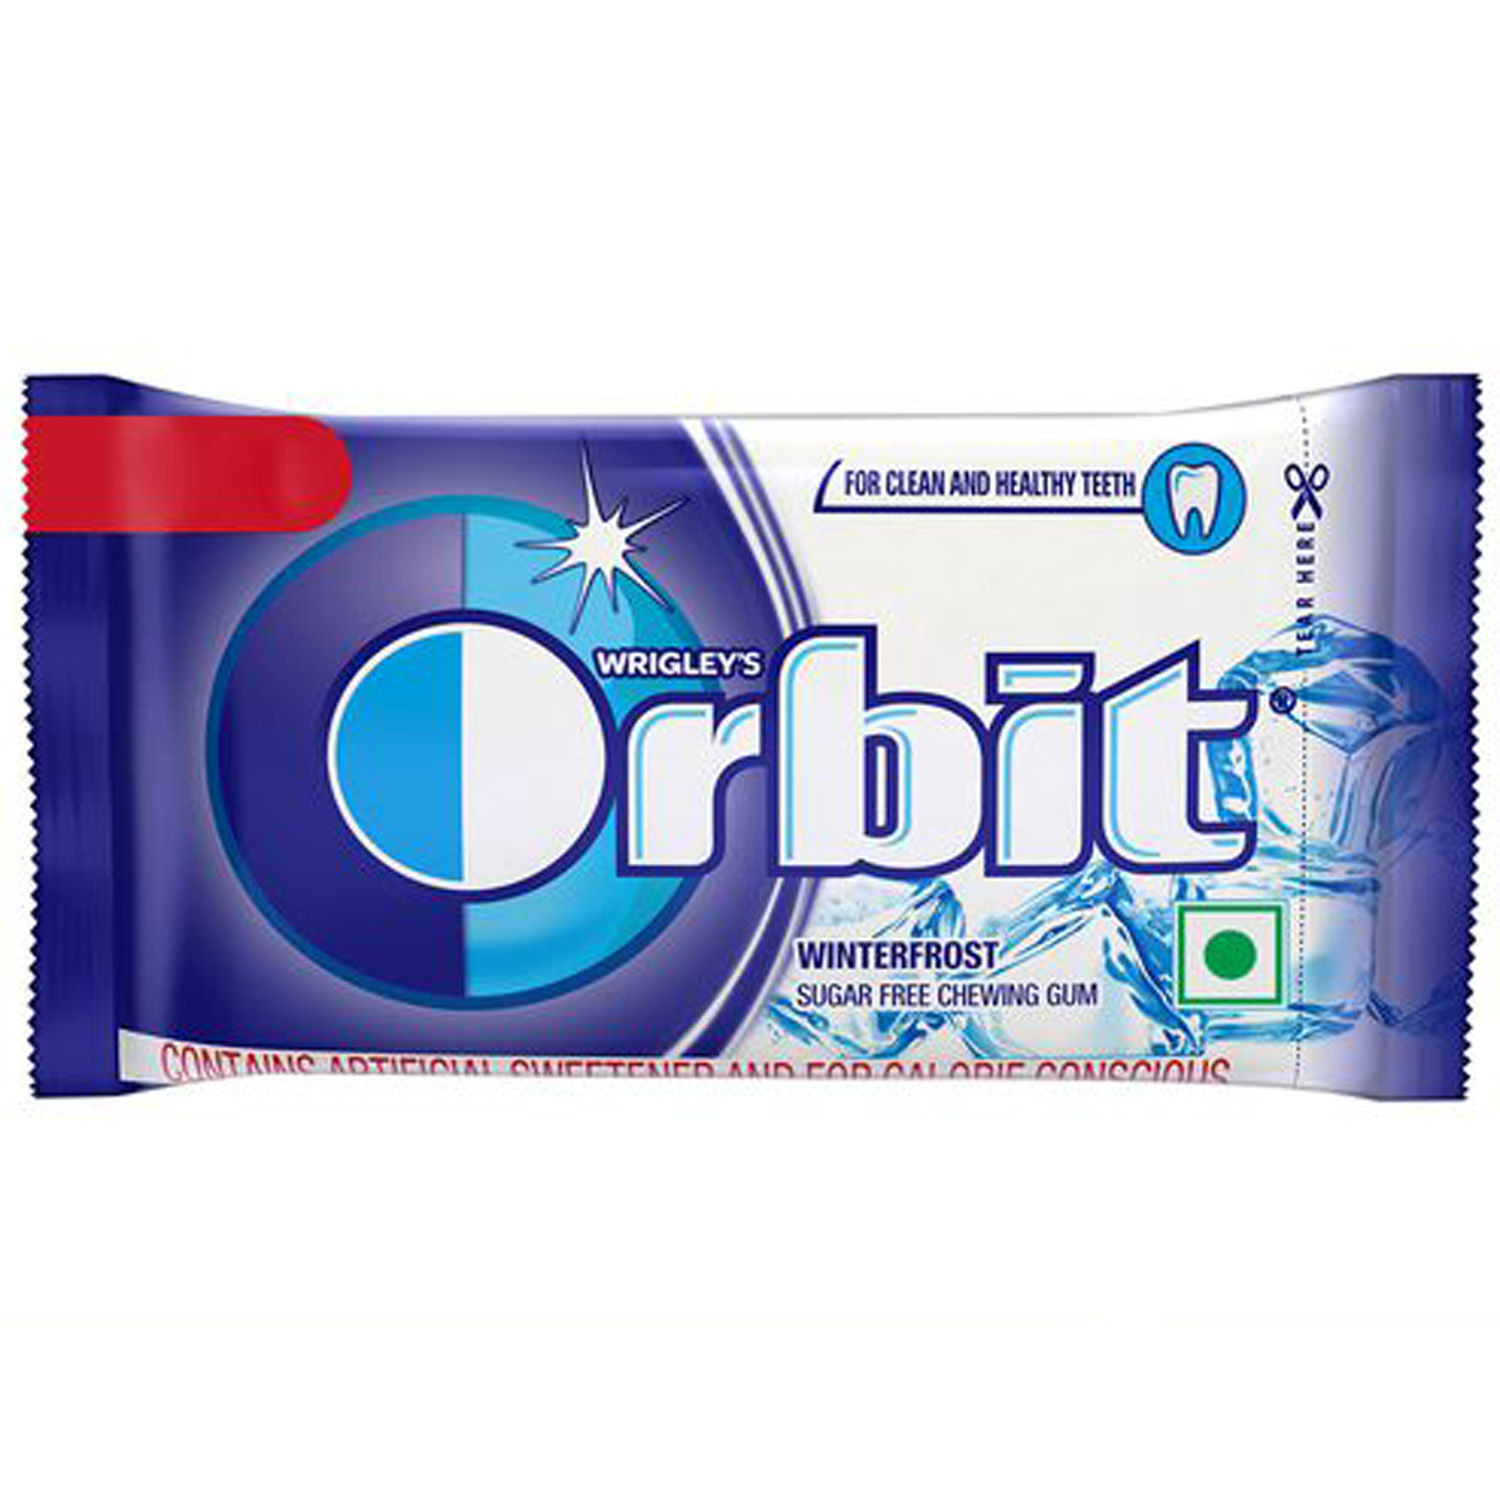 Buy Orbit Winterfrost 4.4g Online